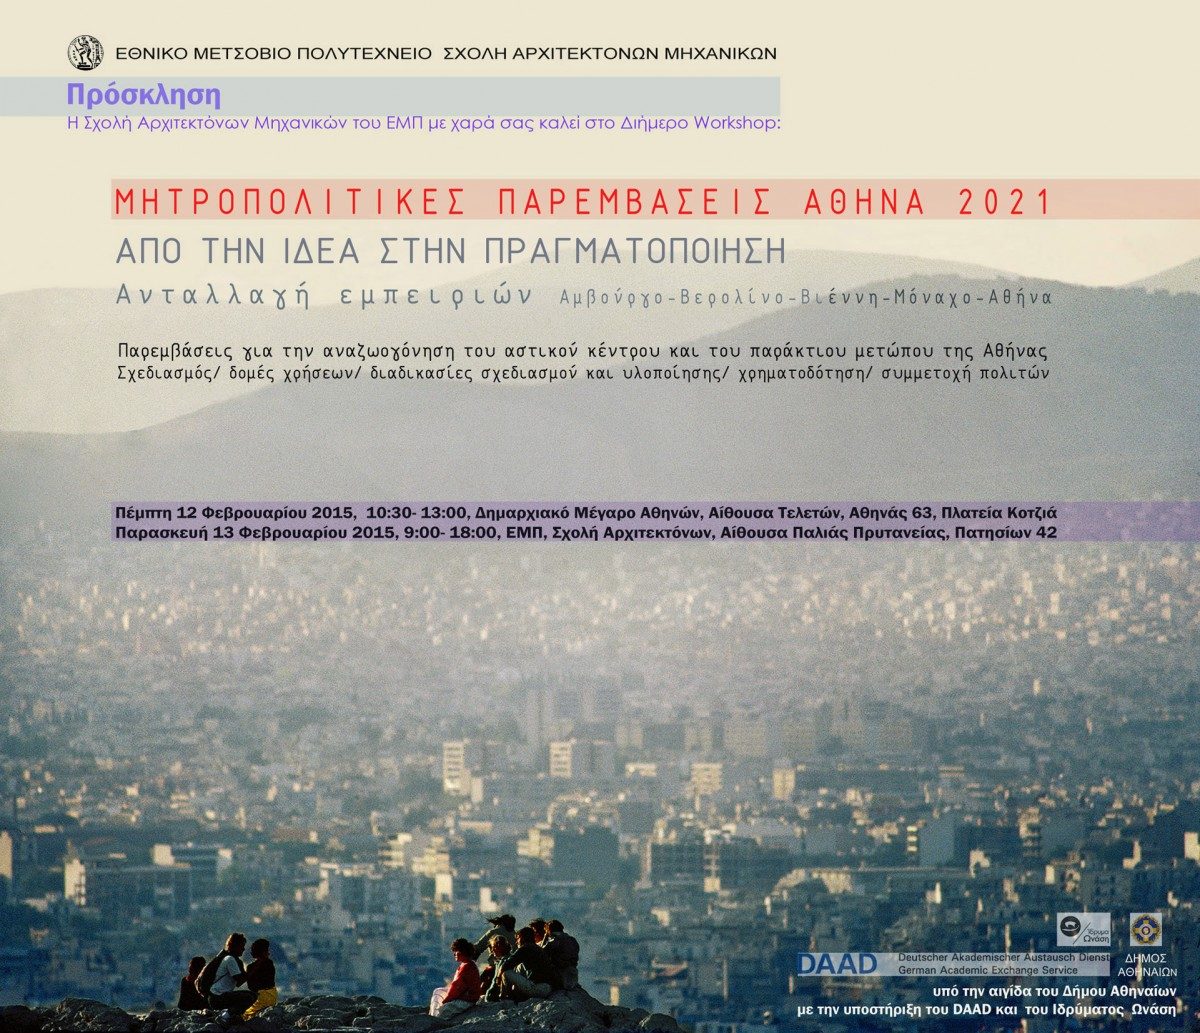 Διήμερο Workshop 12 & 13.2.2015 με θέμα «Μητροπολιτικές Παρεμβάσεις Αθήνα 2021», από τη Σχολή Αρχιτεκτόνων ΕΜΠ